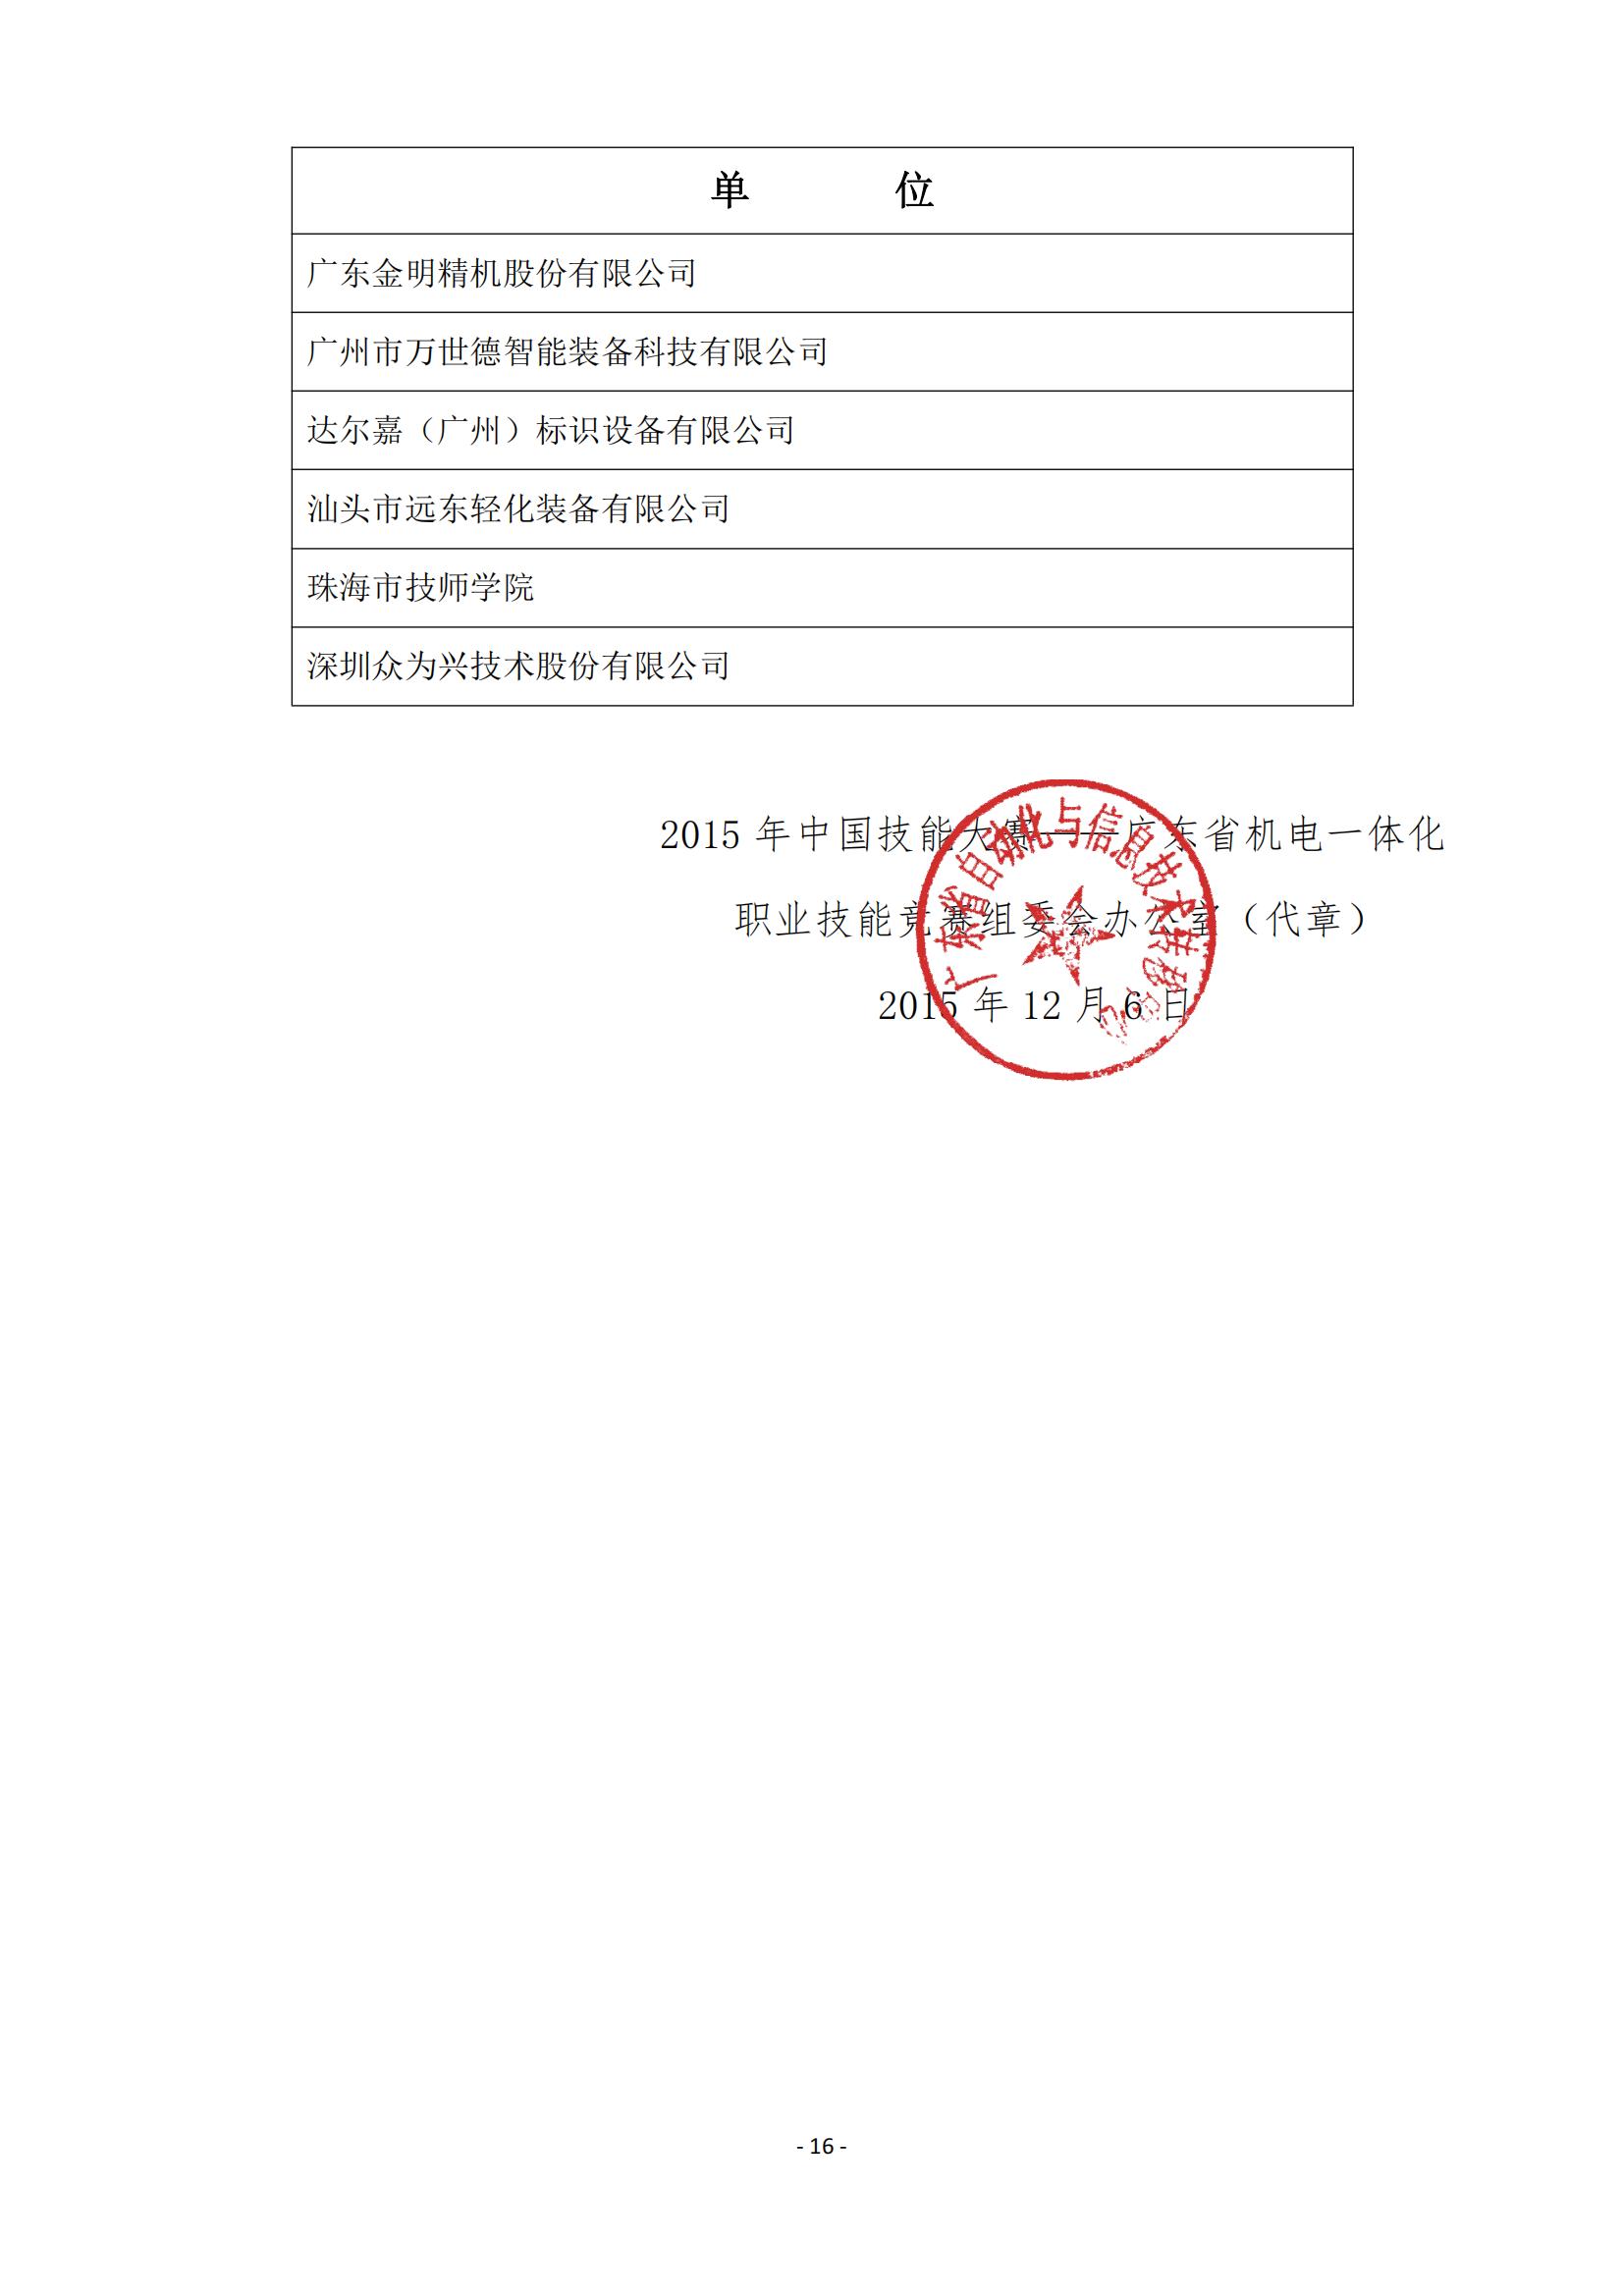 2015 年中国技能大赛--广东省机电一体化职业技能竞赛_15.jpg